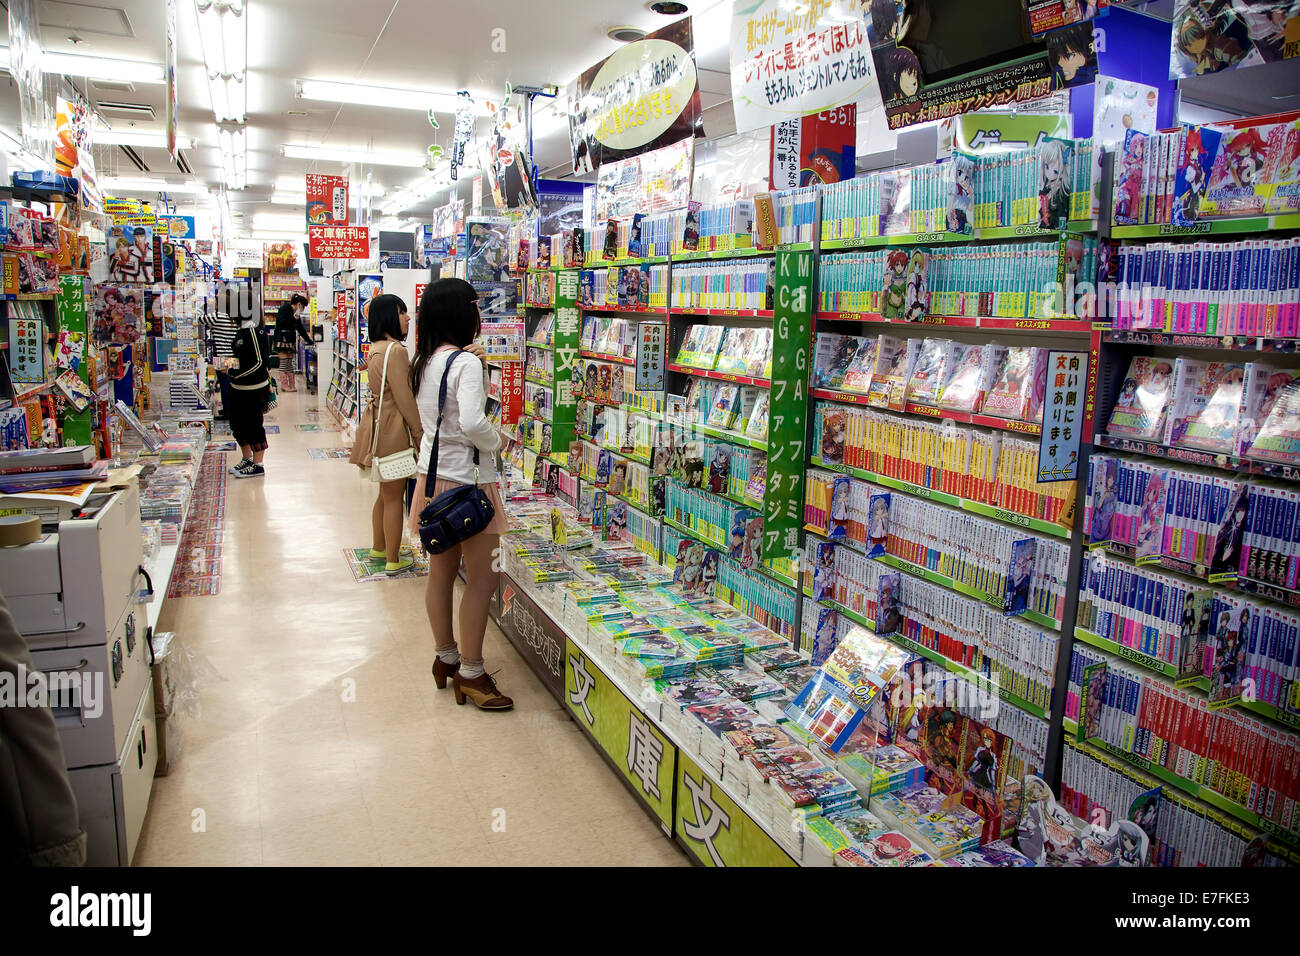 Boutique de mangas et dessins animés, magazines, livres. La culture des jeunes. Kyoto, Japon, Asie Banque D'Images